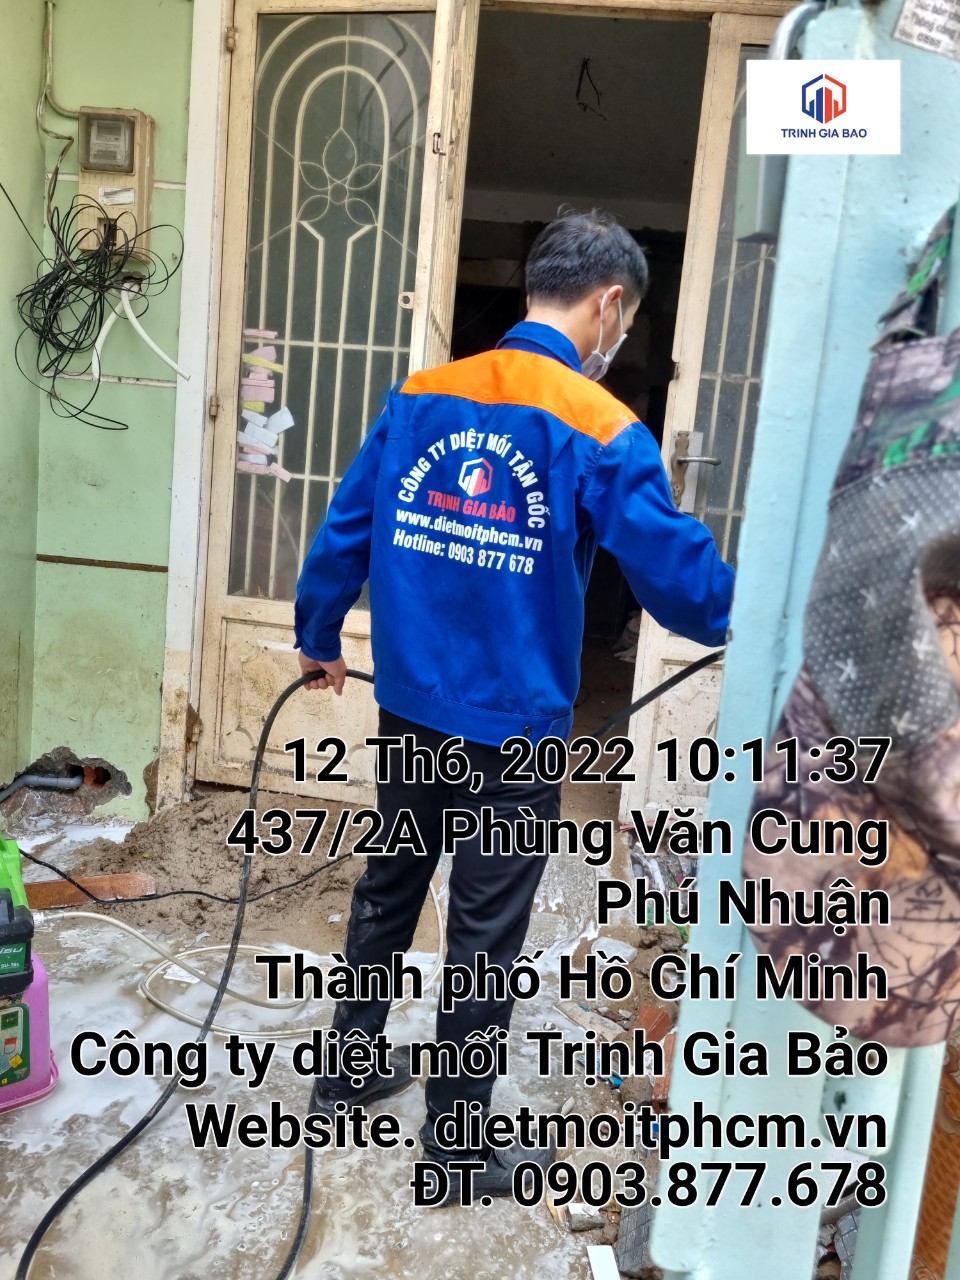 Quy trình diệt mối tại quận Phú Nhuận an toàn của Cachdietmoi.vn